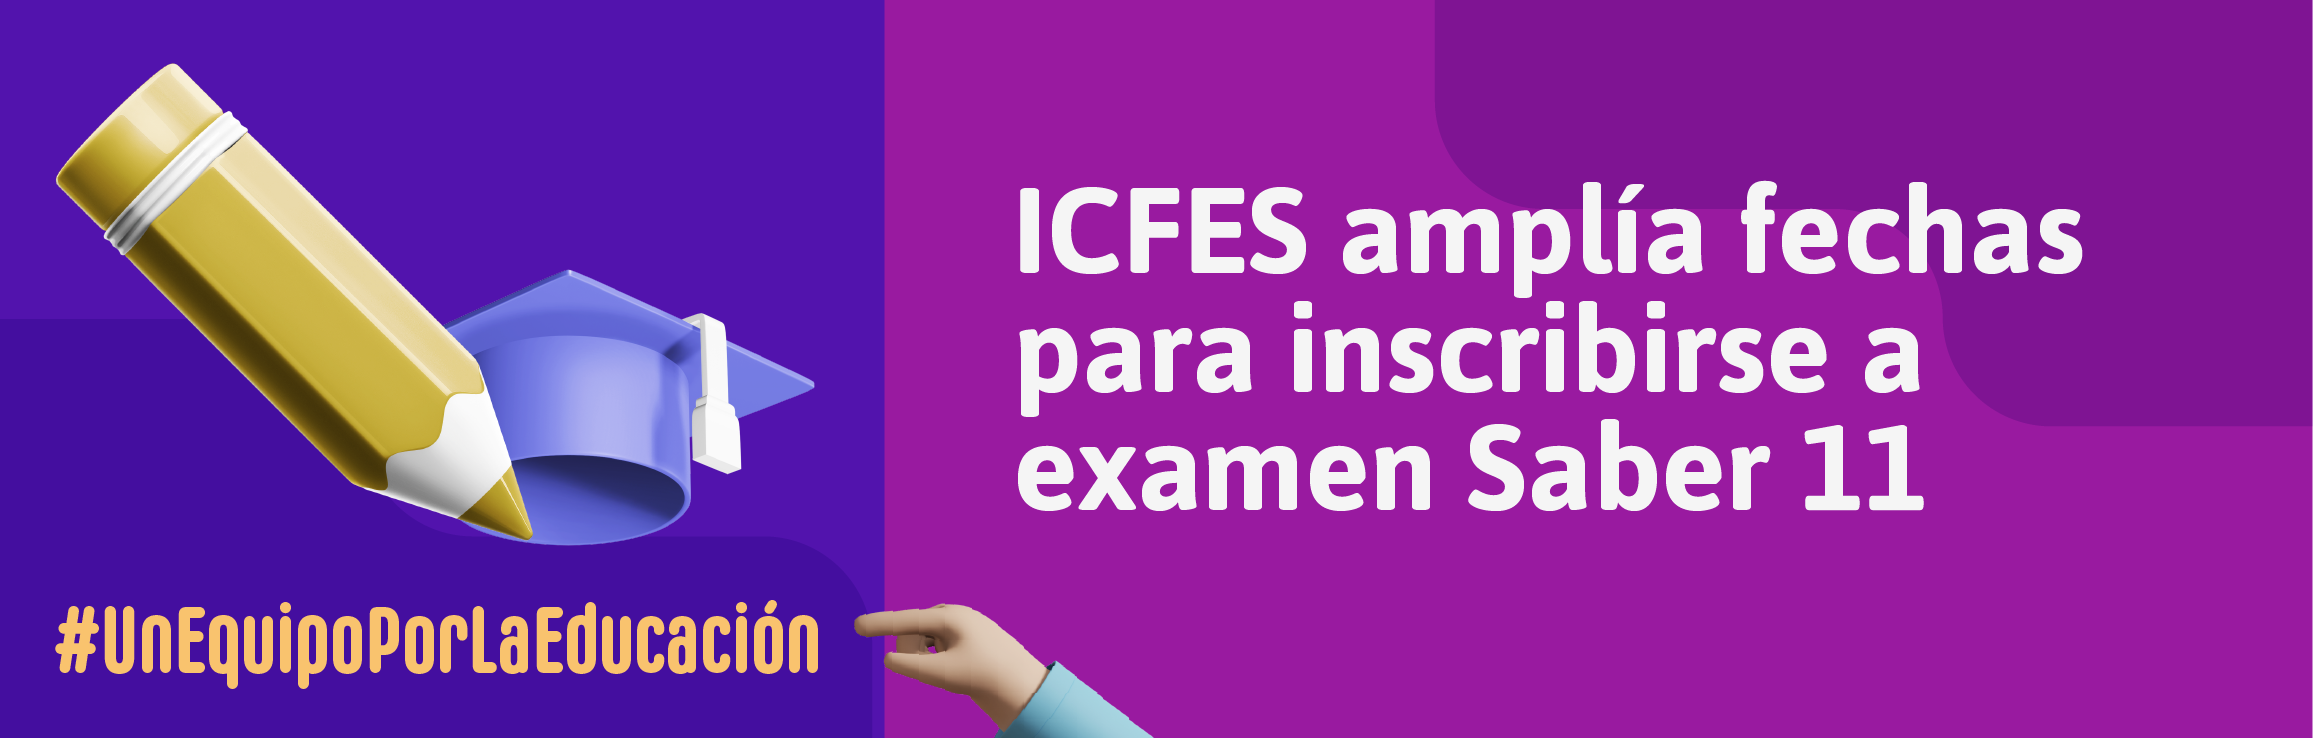 ICFES amplía fechas para inscribirse a examen Saber 11